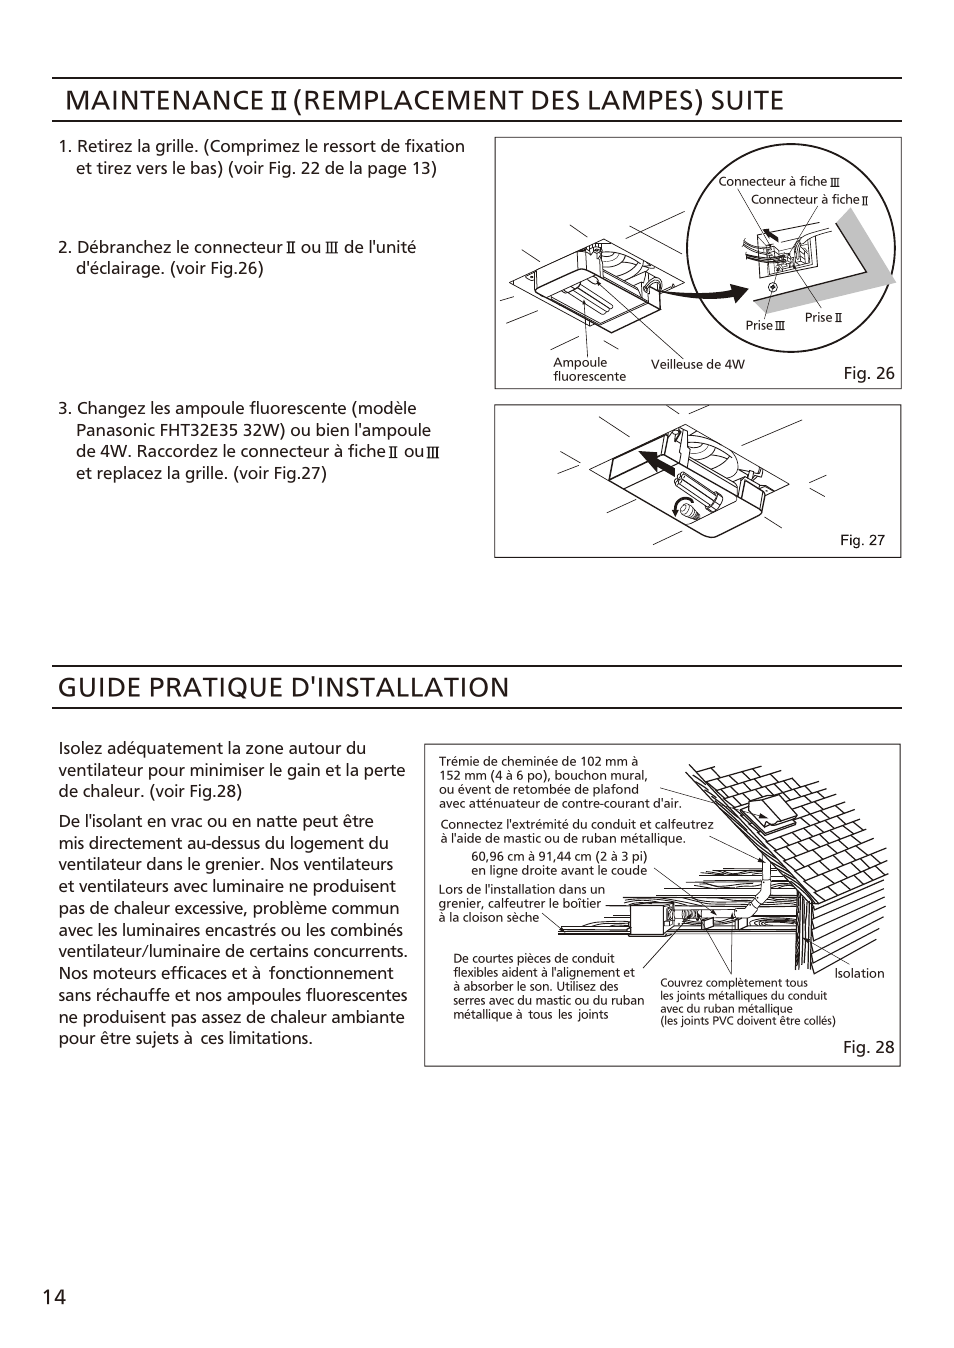 页 14, Maintenance (remplacement des lampes) suite, Guide pratique d installation | Panasonic FV-08VFL3 Manuel d'utilisation | Page 14 / 16